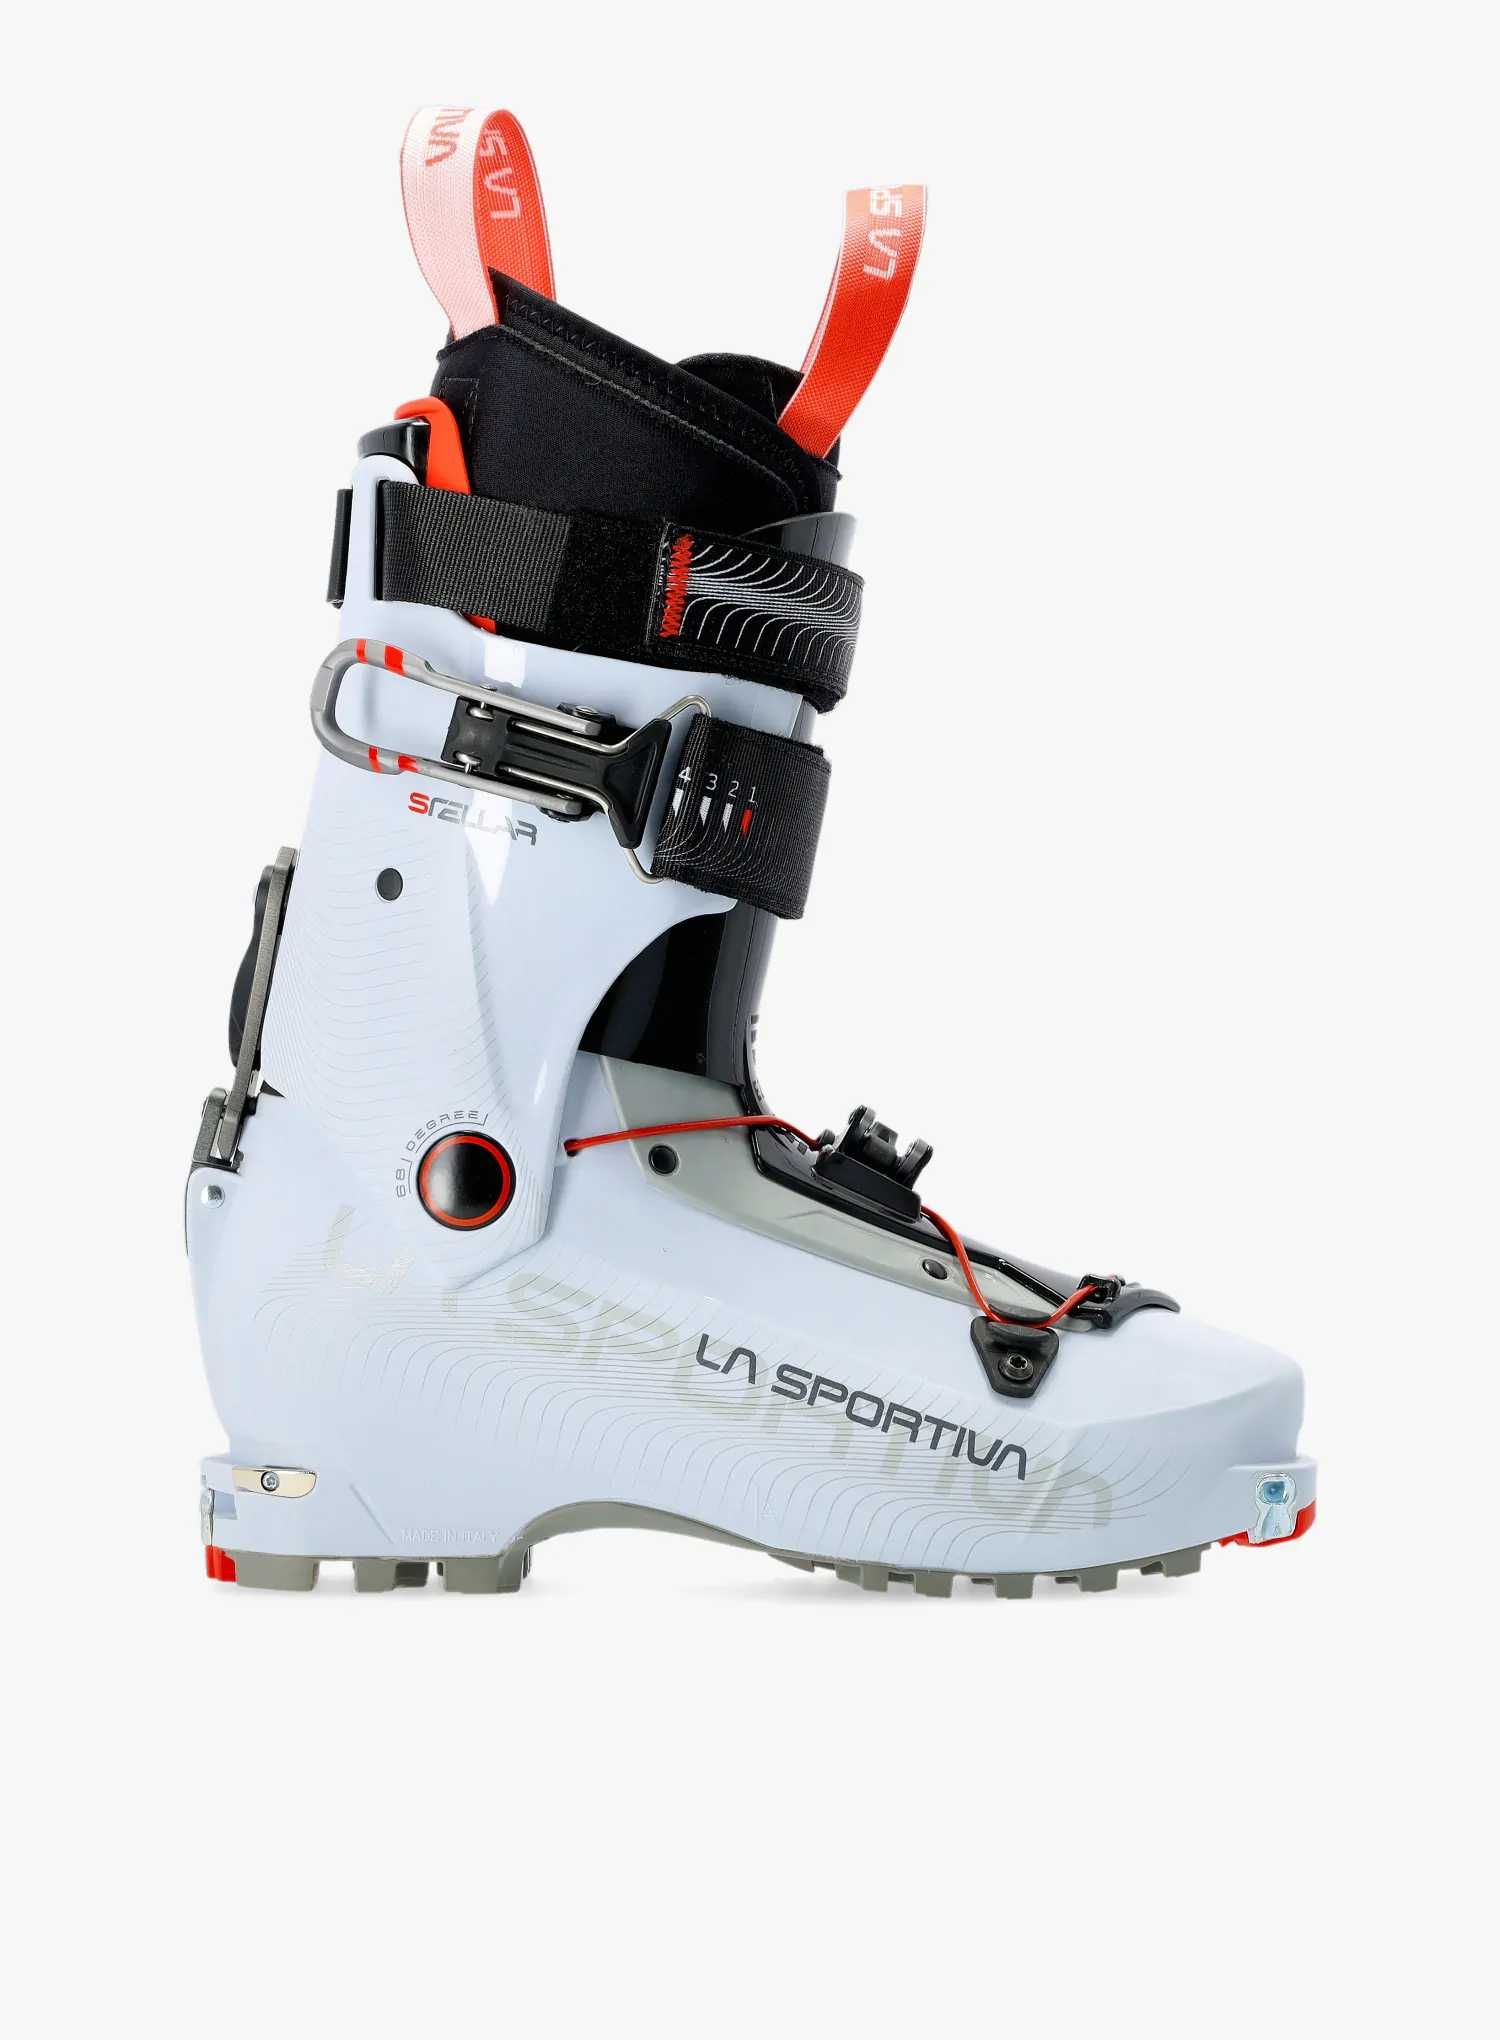 Buty skiturowe La Sportiva Idealne stellar ice 25cm